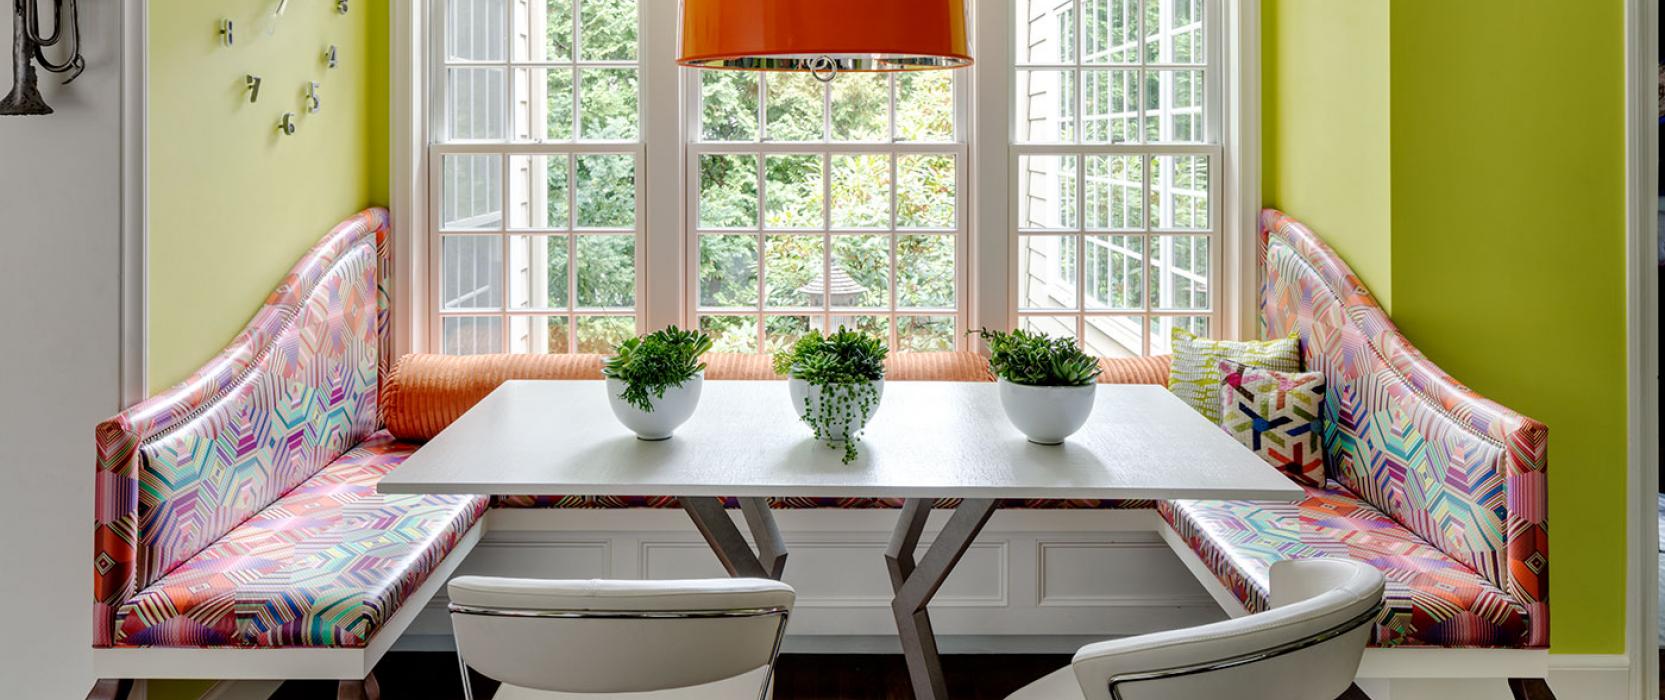 Bespoke Design Kitchen Banquette by Heather Vaughan Interior Design